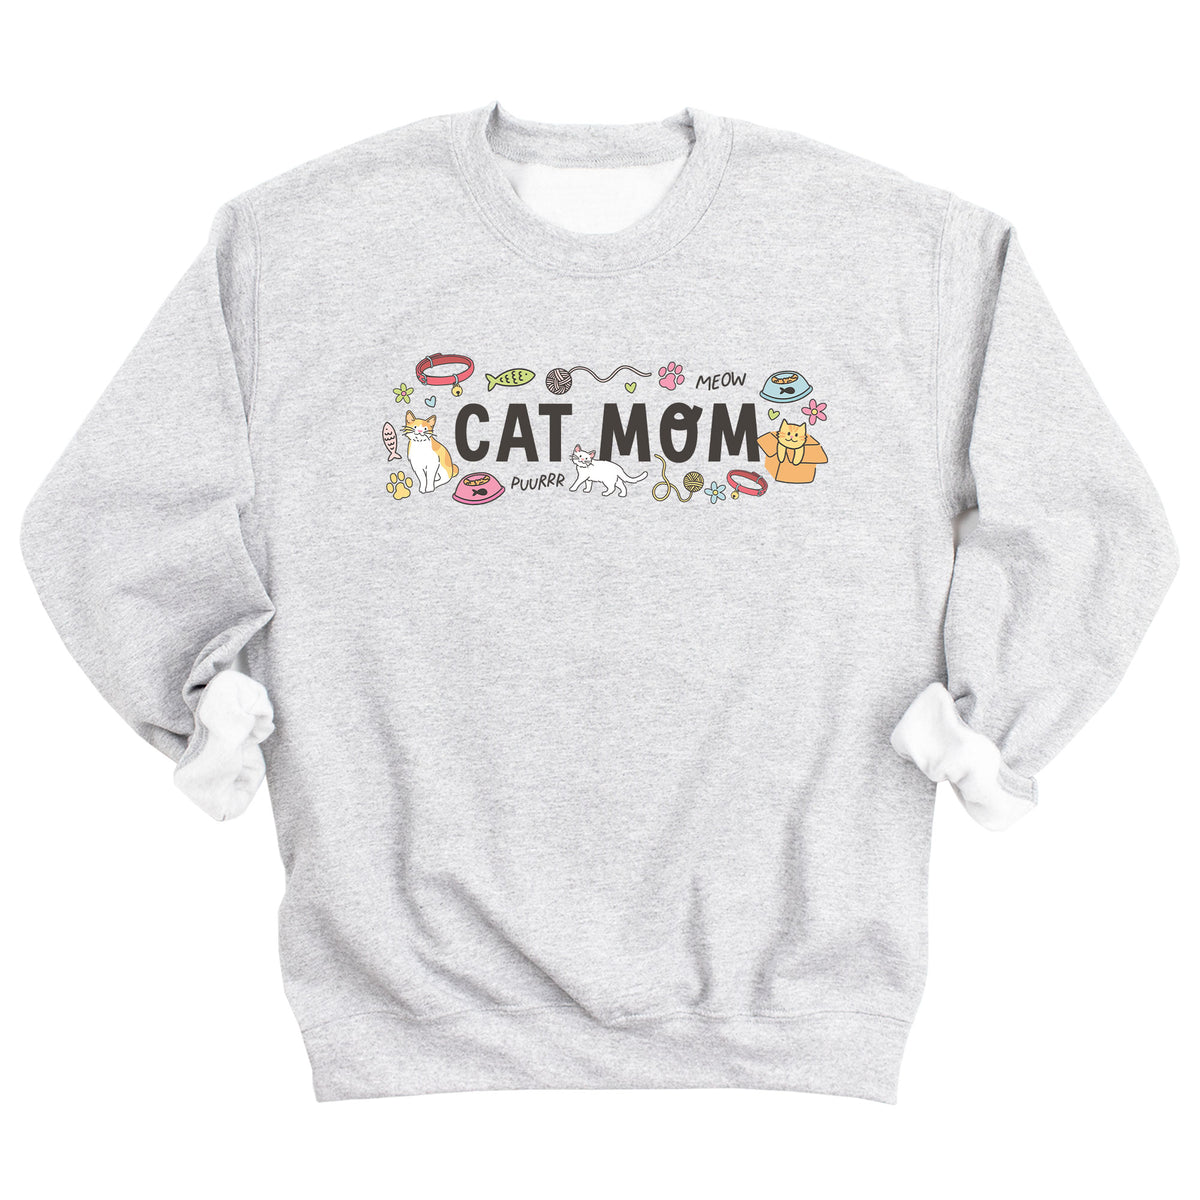 Cat Mom Doodles Sweatshirt